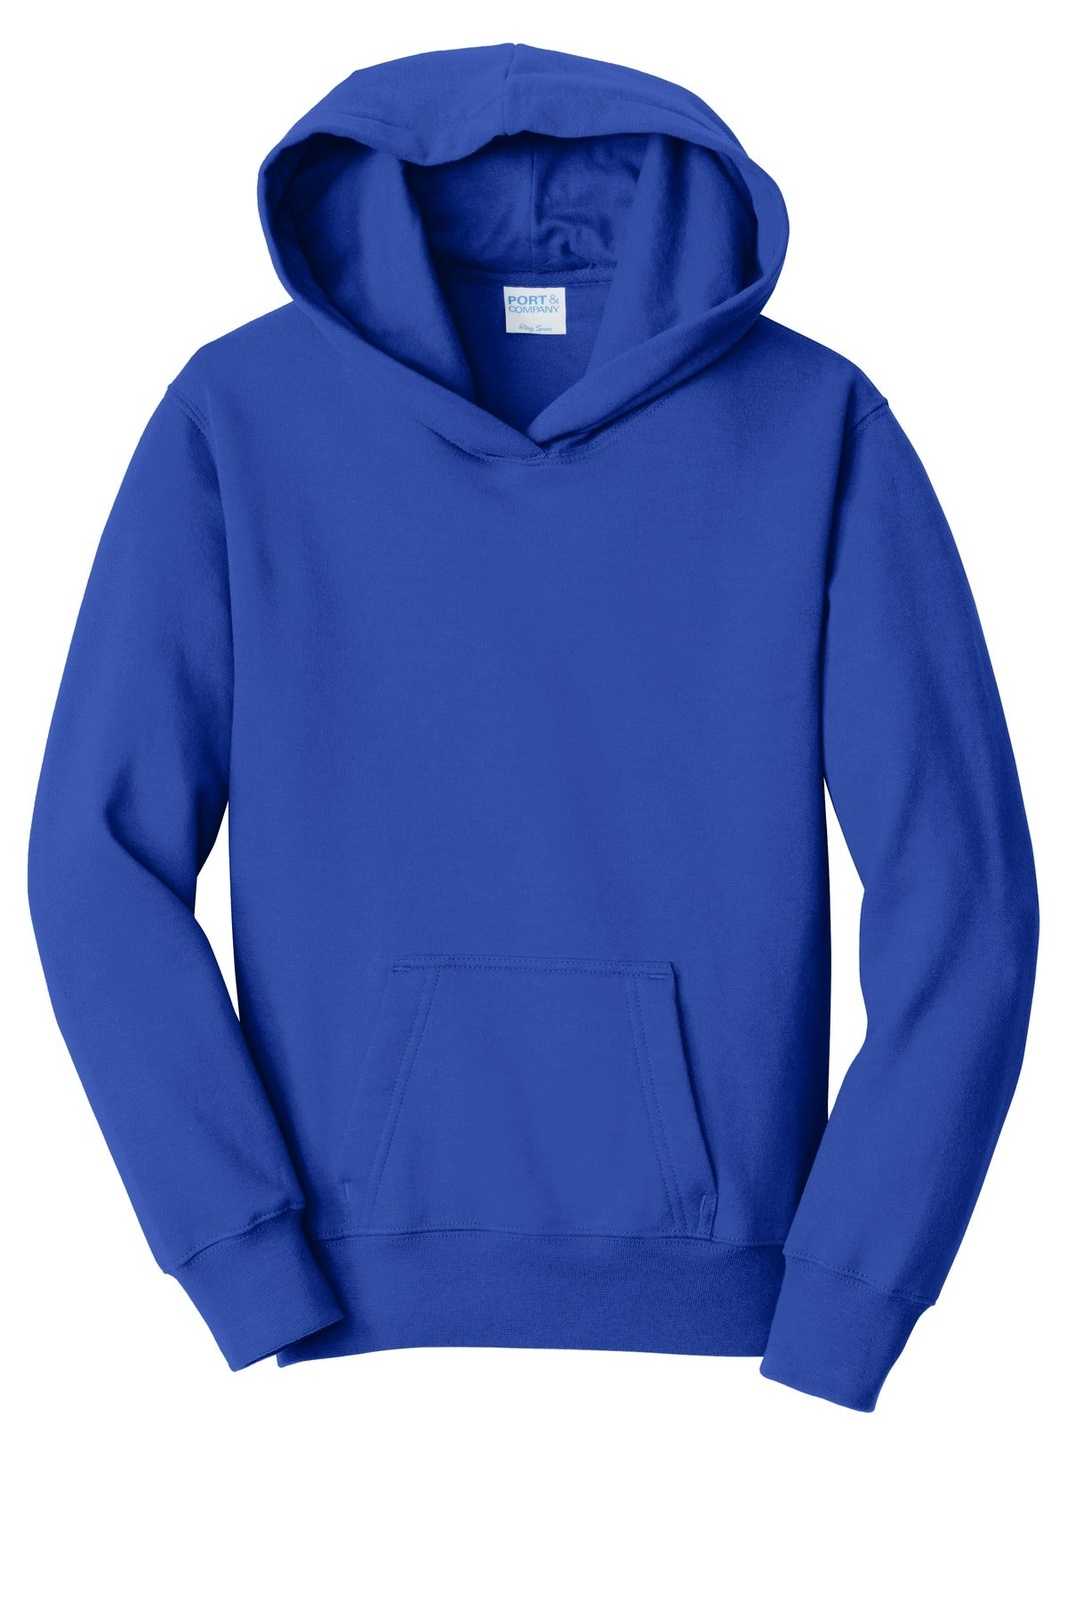 Port &amp; Company PC850YH Youth Fan Favorite Fleece Pullover Hooded Sweatshirt - True Royal - HIT a Double - 5